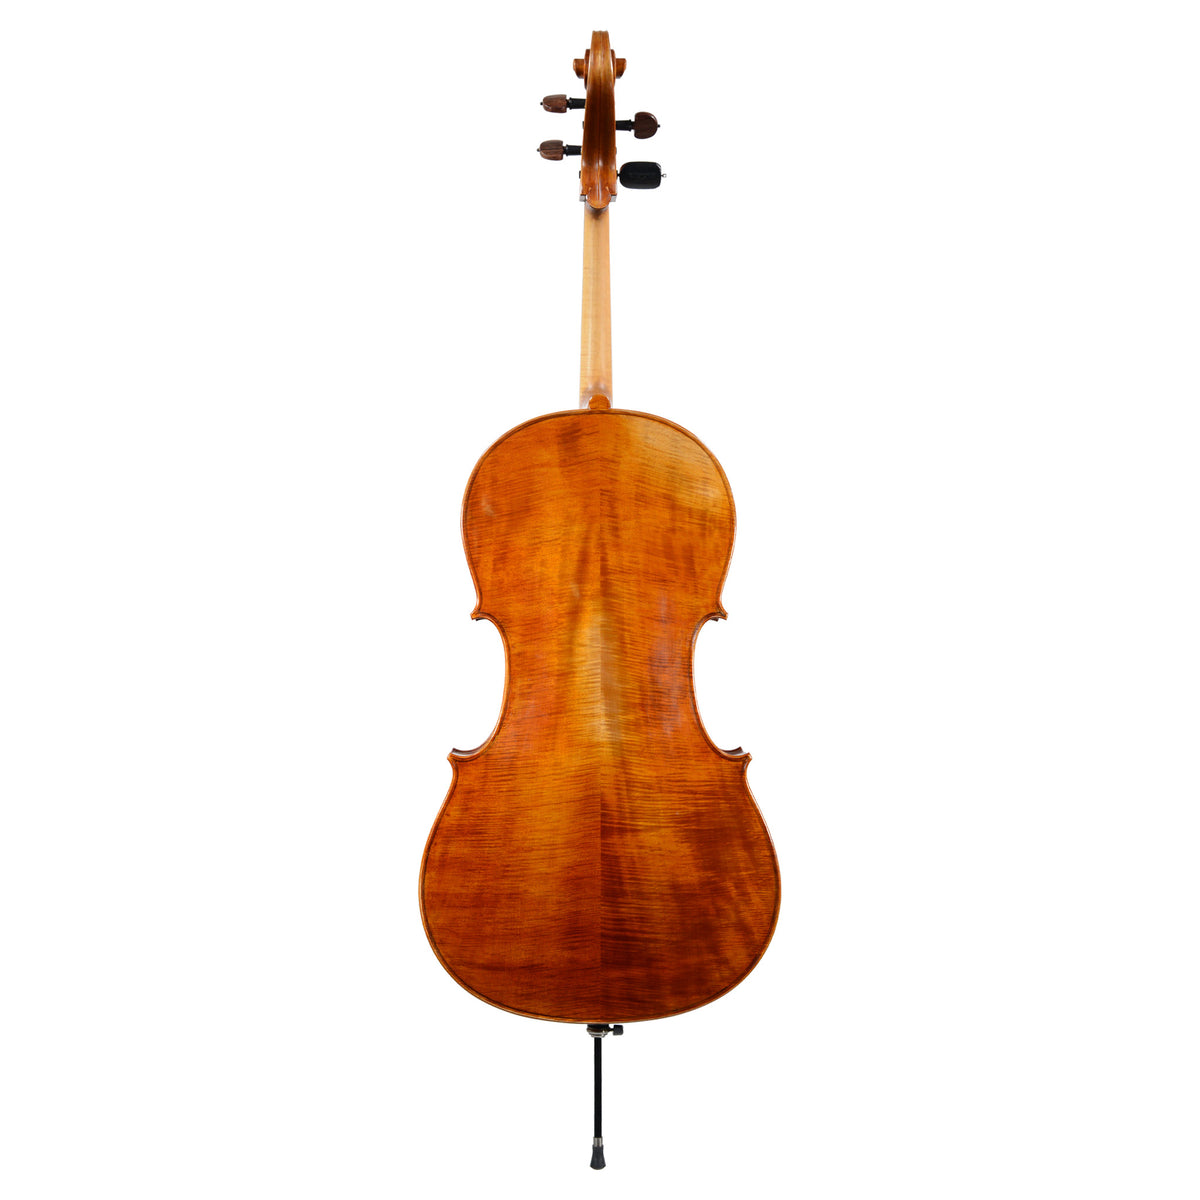 Calin Wultur Piatti Student Cello